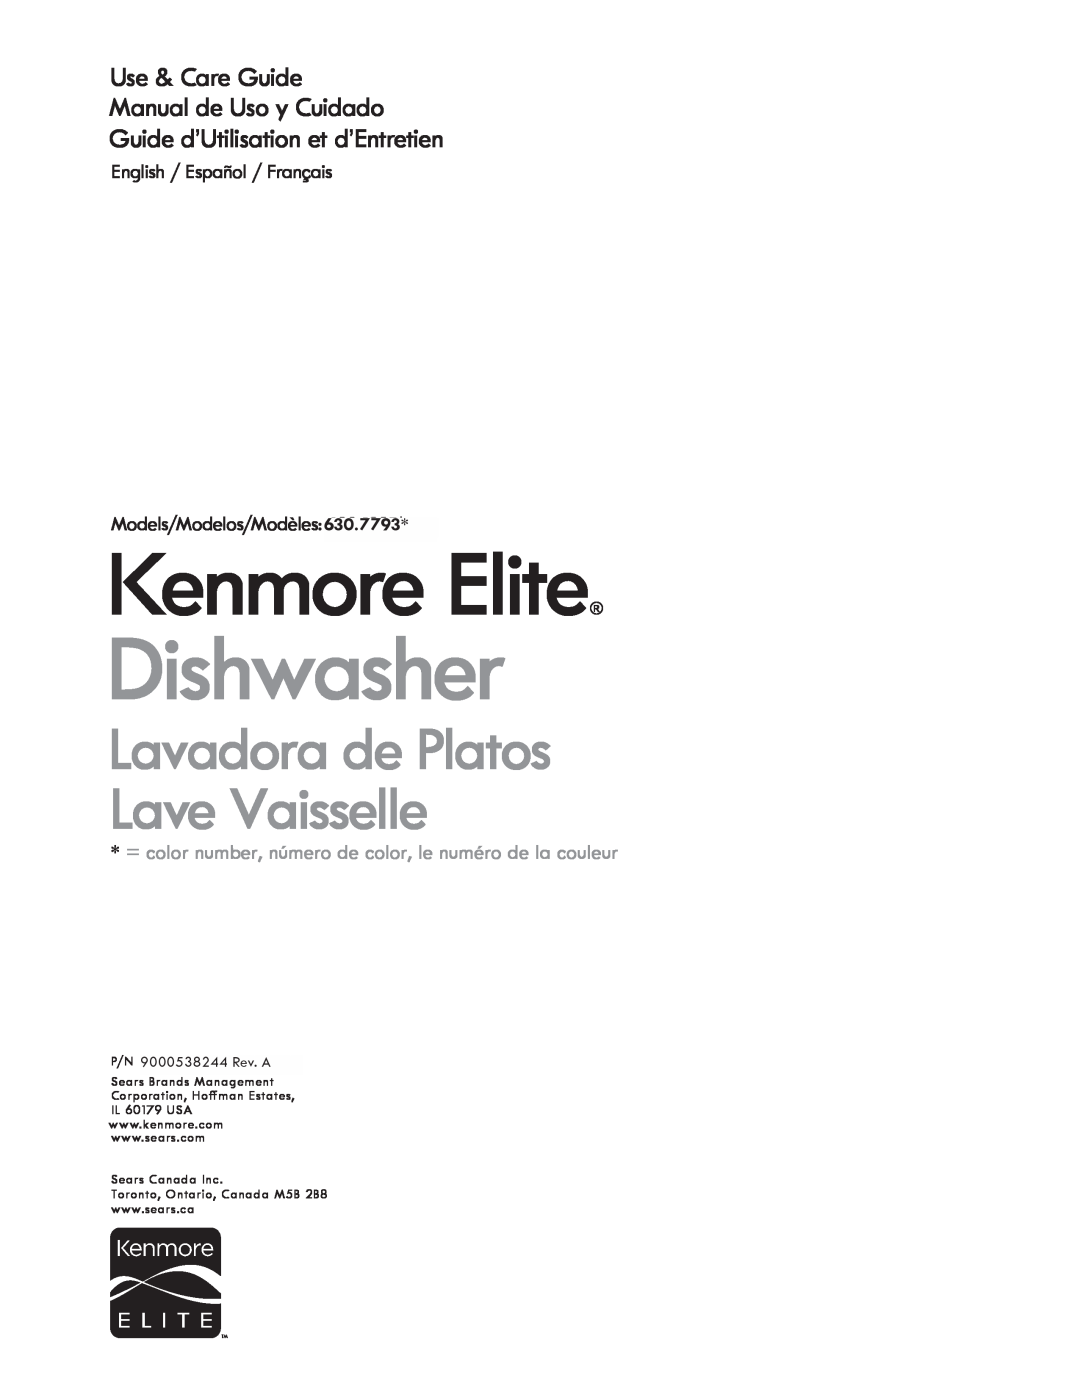 Kenmore 630.7793 manual Use & Care Guide Manual de Usa y Cuidado, Guide dUtilisation et dEntretien, I<enmore Elite 